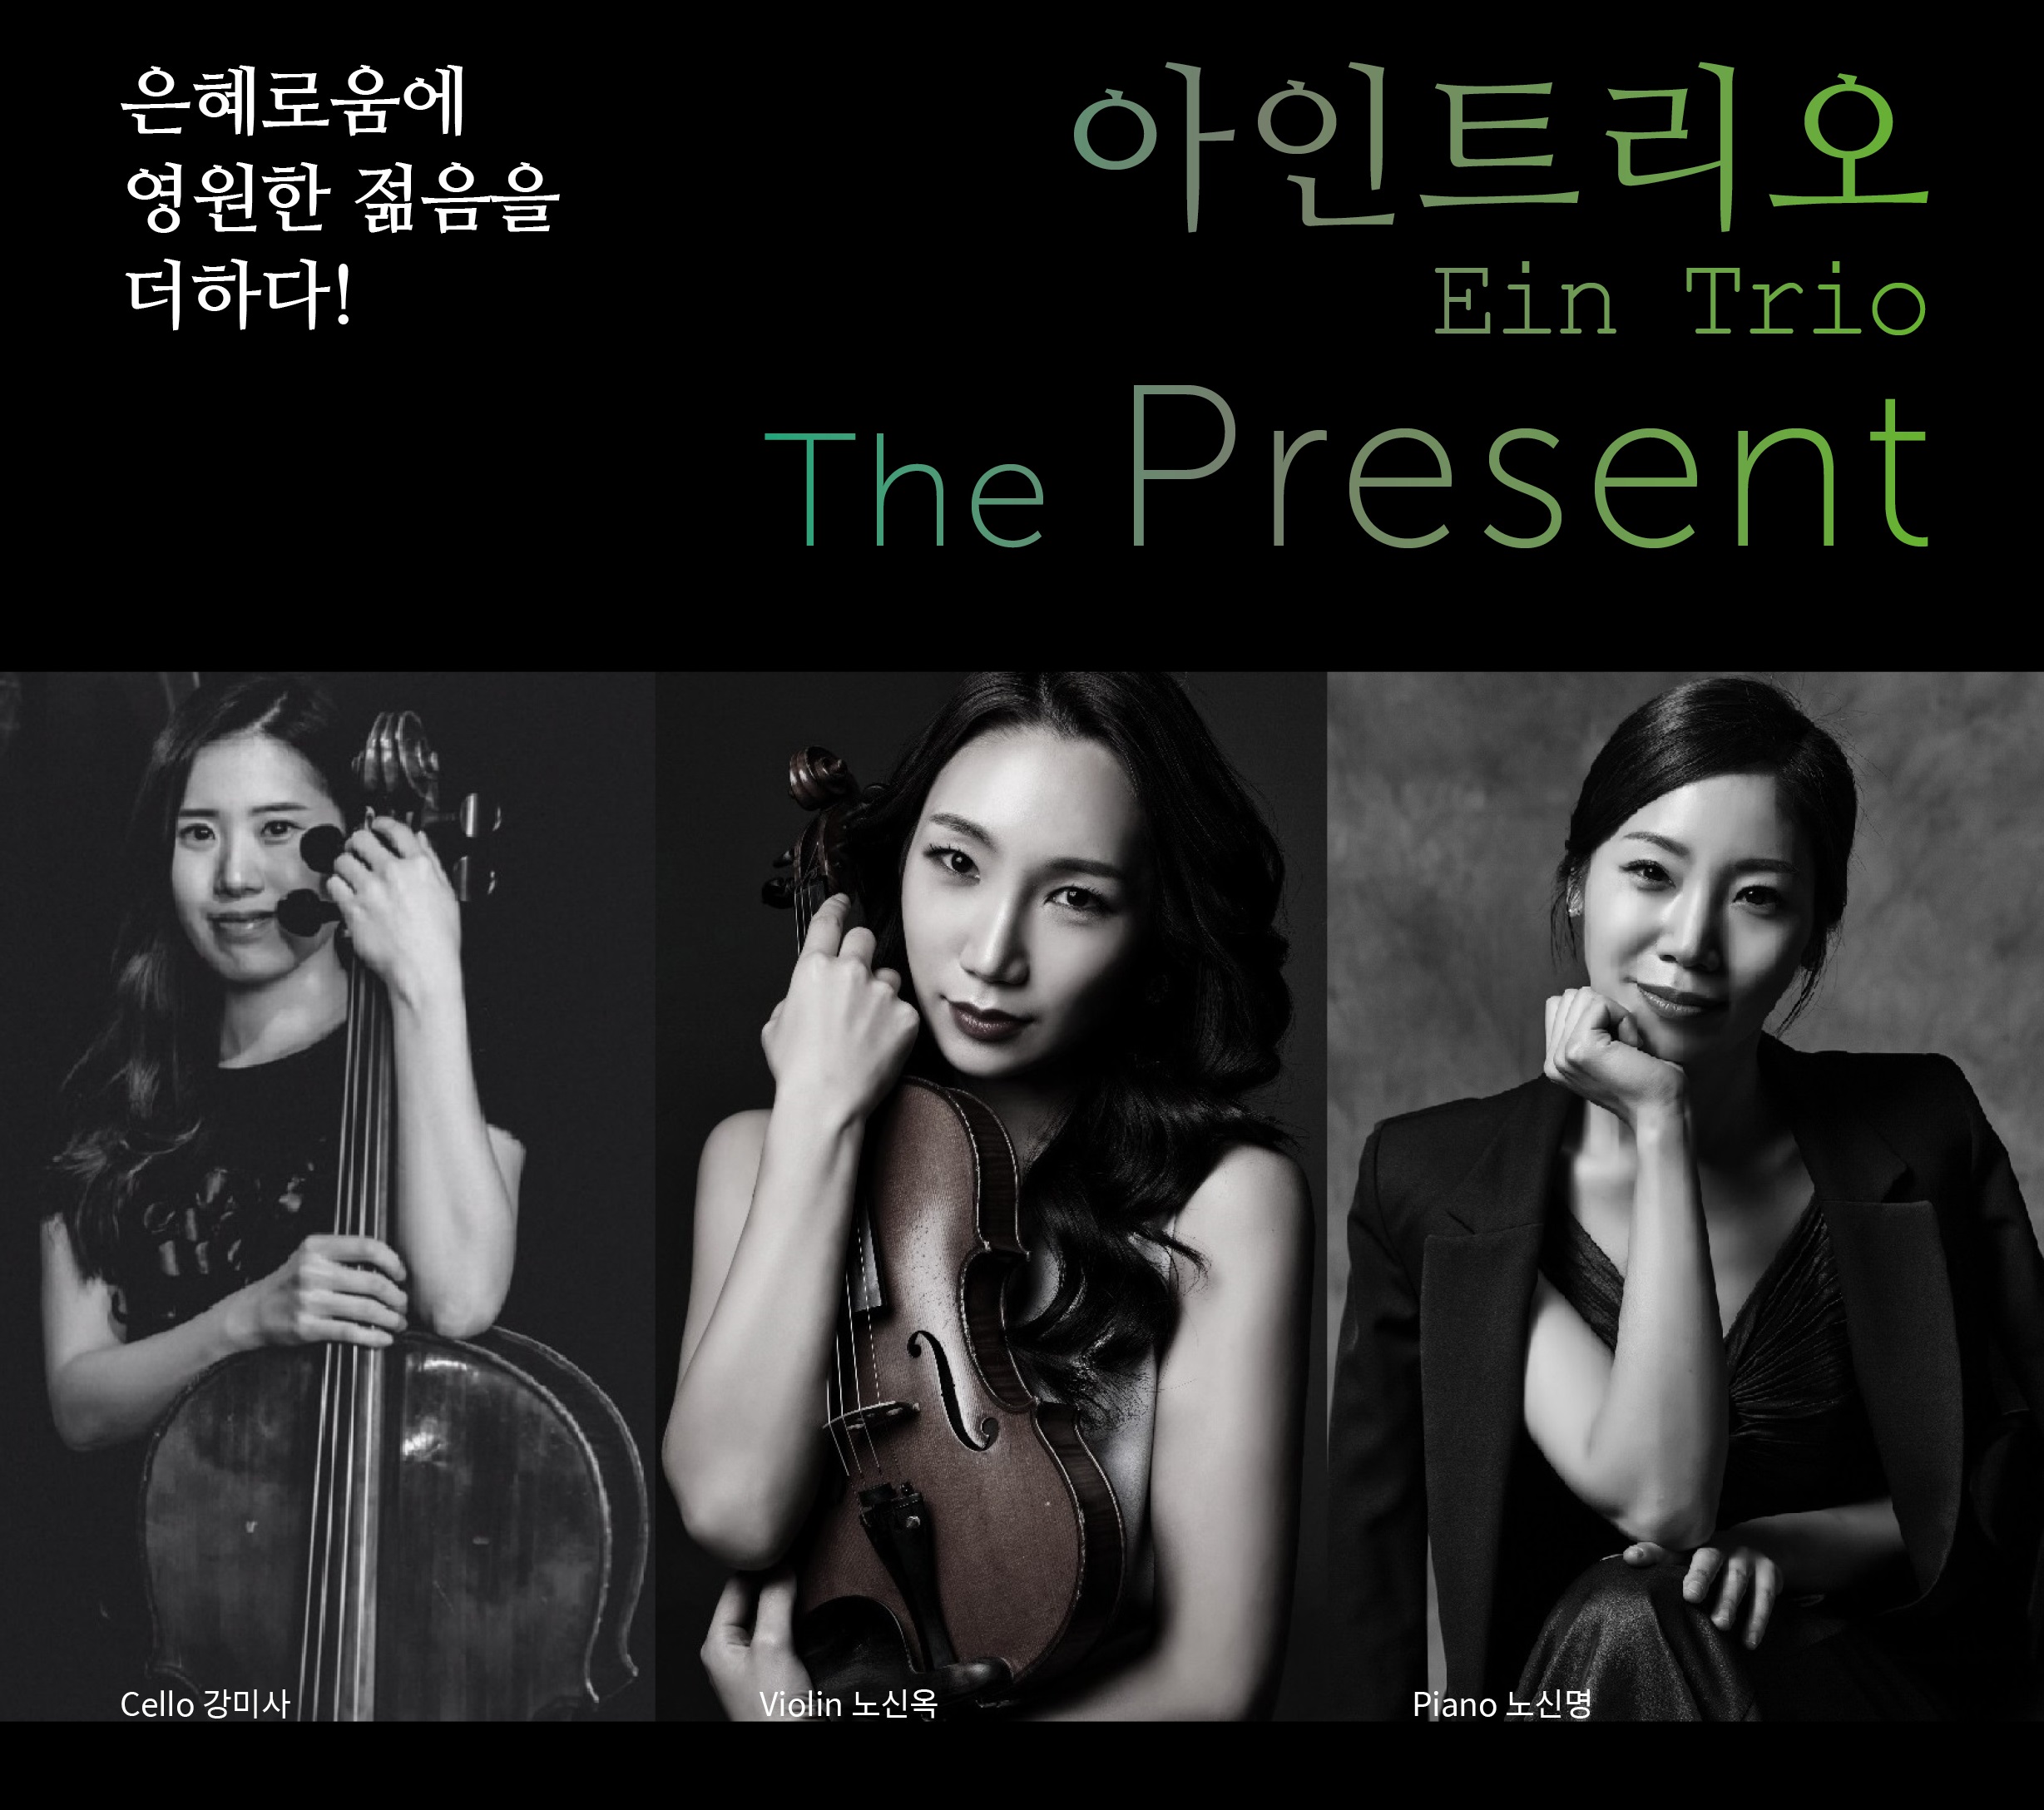 아인트리오 Ein Trio - The Present (CD)